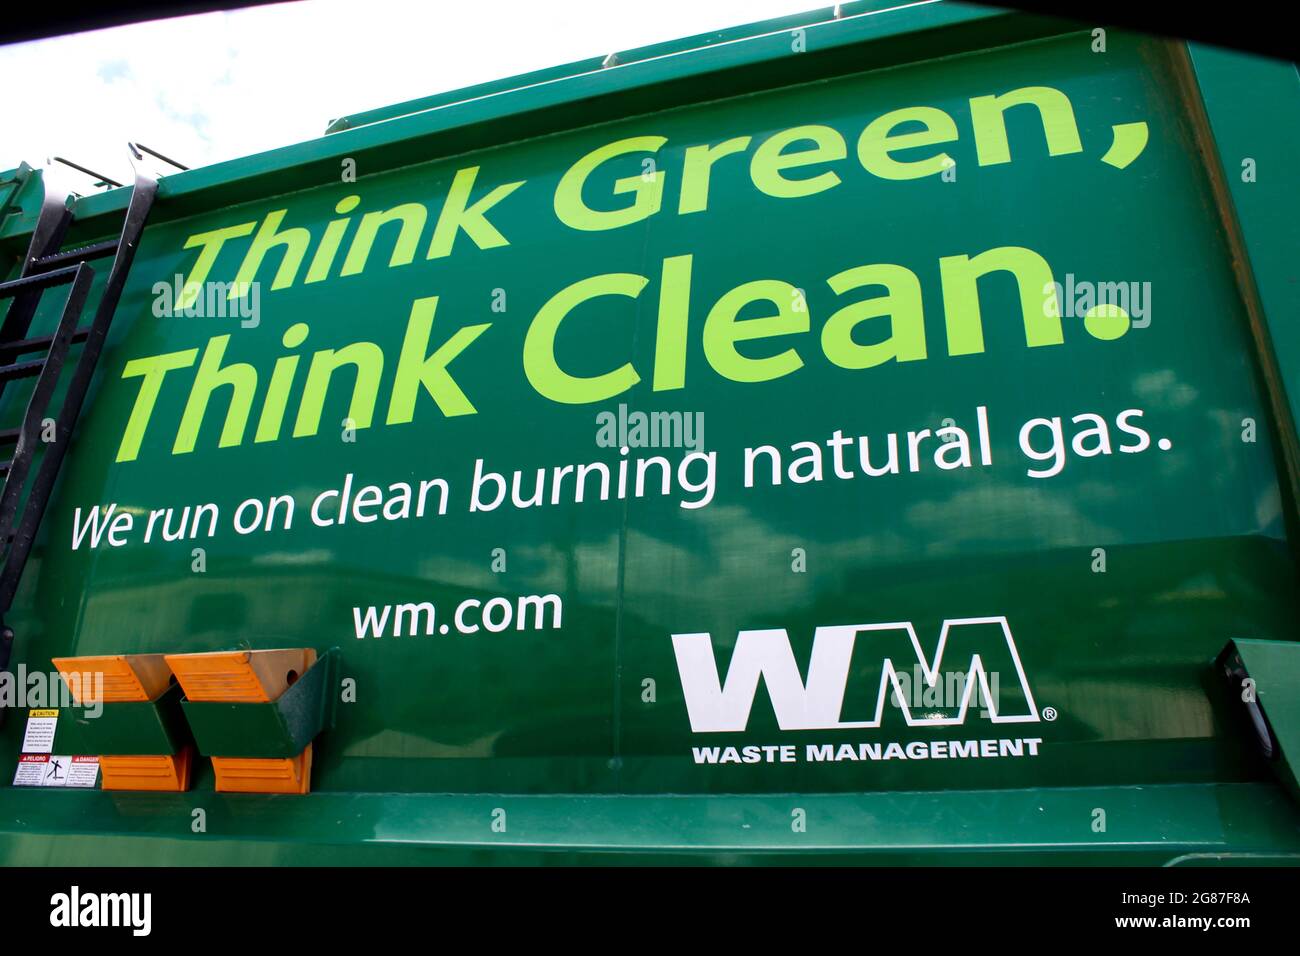 WM Waste Management, es el proveedor líder de gestión integral de residuos y ofrece servicios como recolección y eliminación de basura, reciclaje Foto de stock